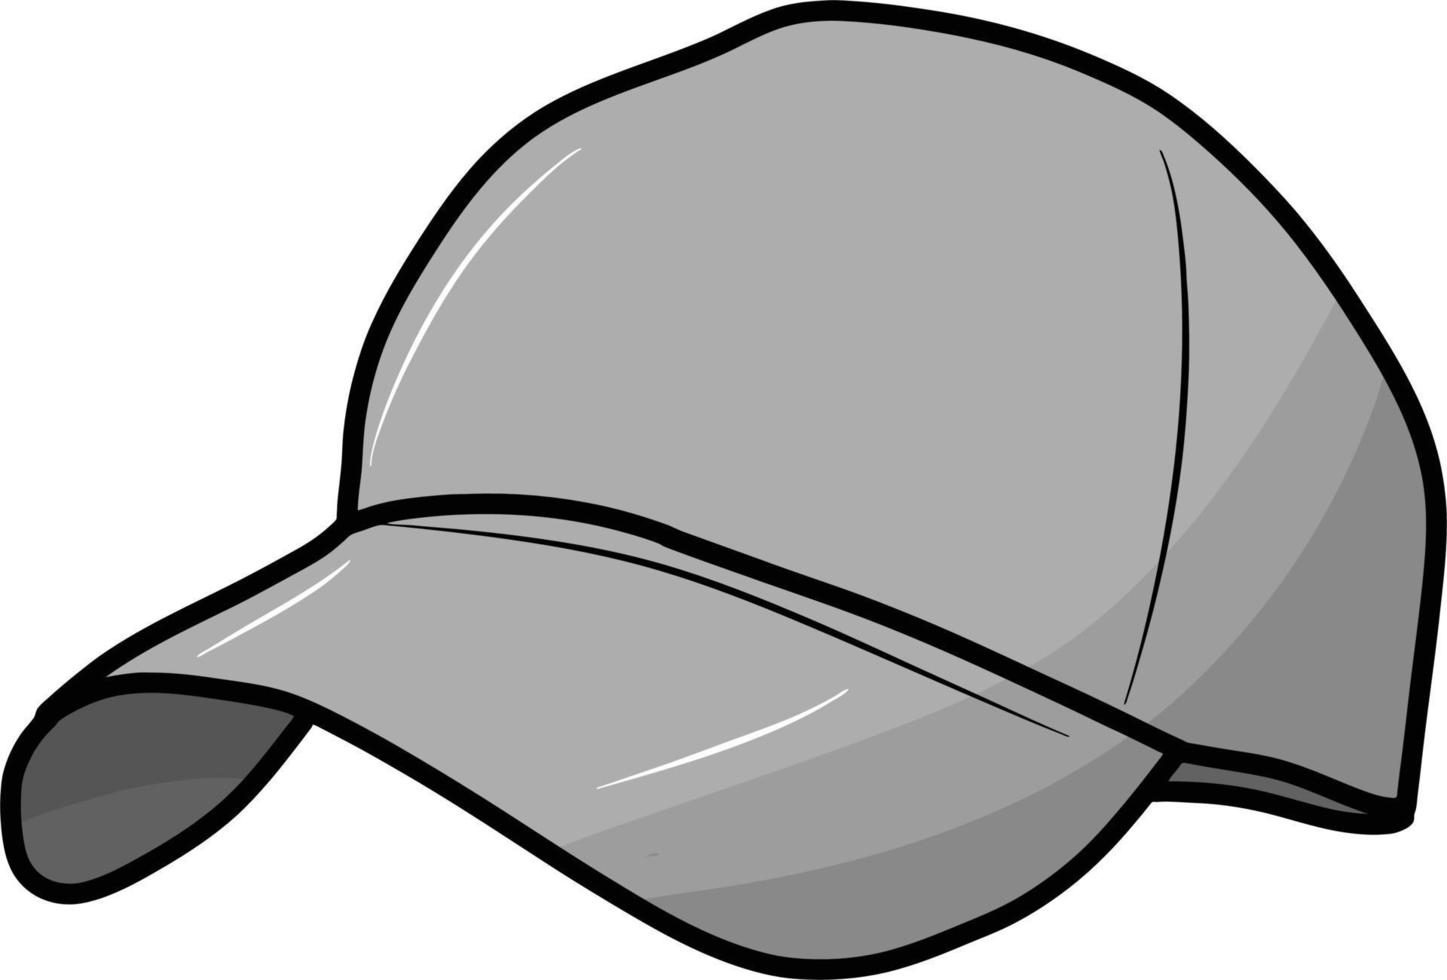 Hat cartoon illustration vector